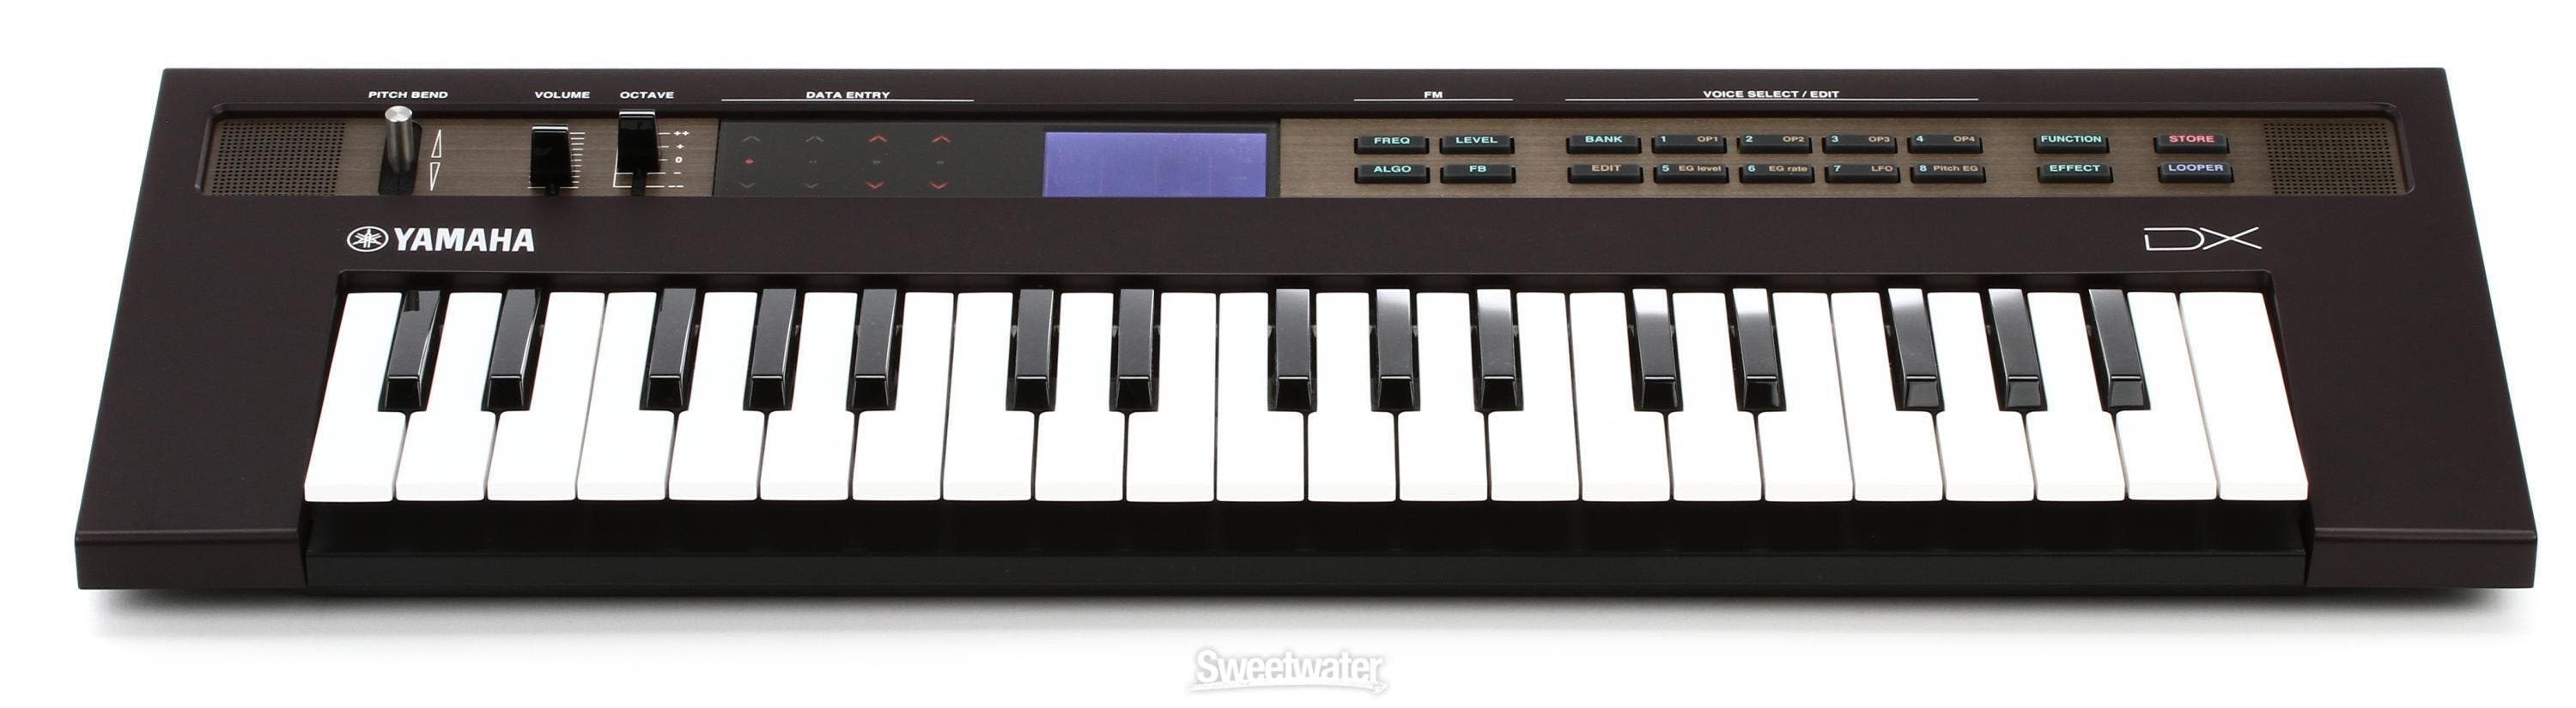 Yamaha Reface 37 Key Portable DX FM Synthesizer $249.99